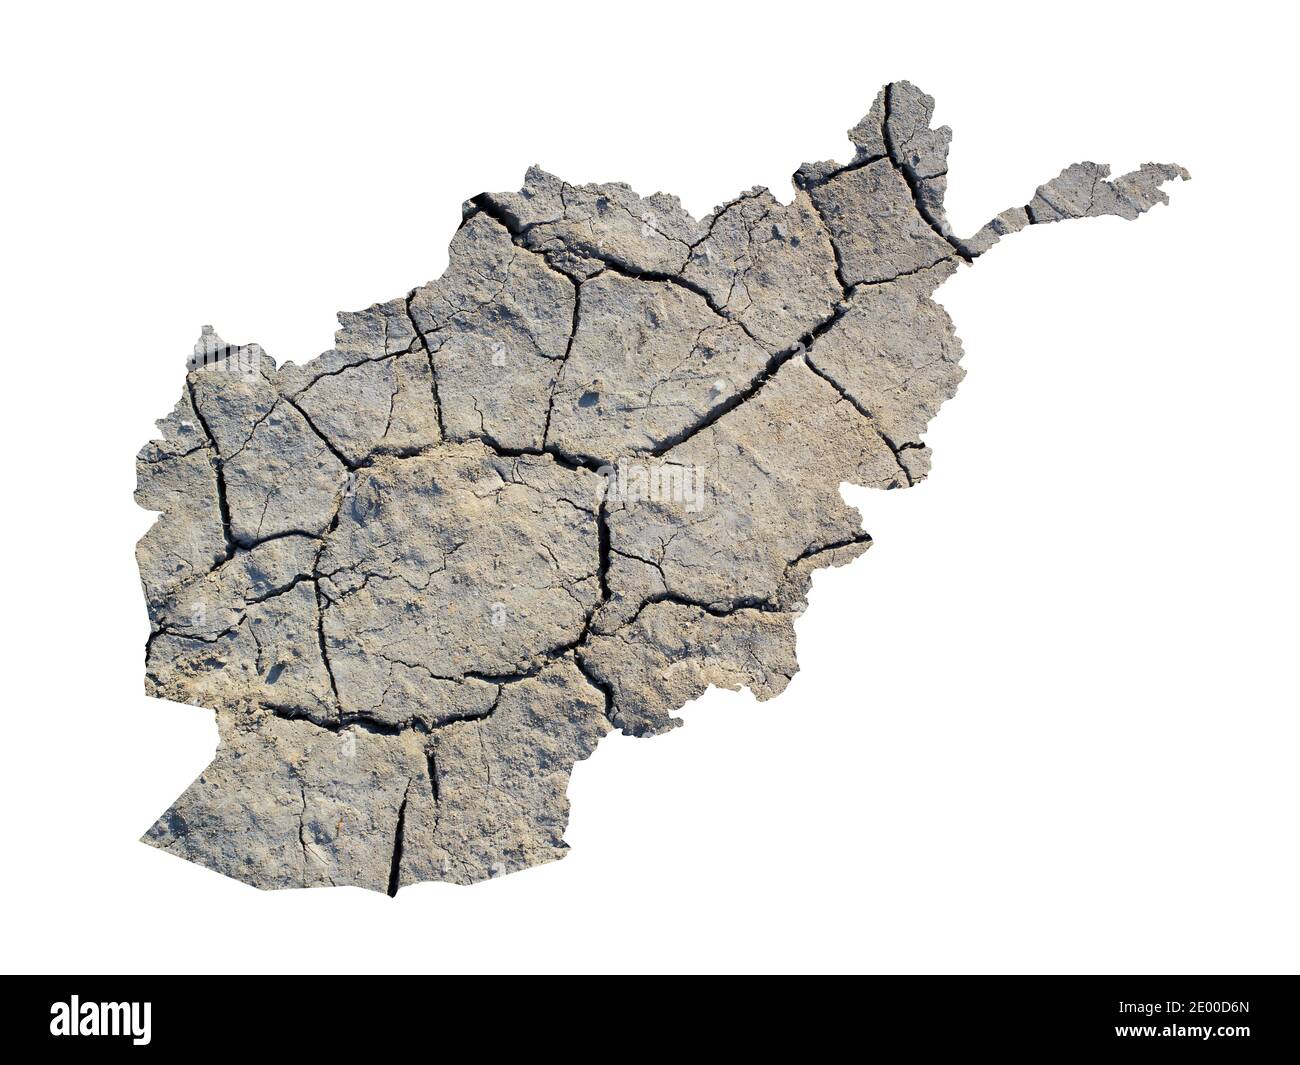 Silhouette dell'Afghanistan. La mappa è realizzata con l'immagine di terra asciutta. Metafora di cambiamenti climatici catastrofici nella zona - siccità, dryland, desertificat Foto Stock